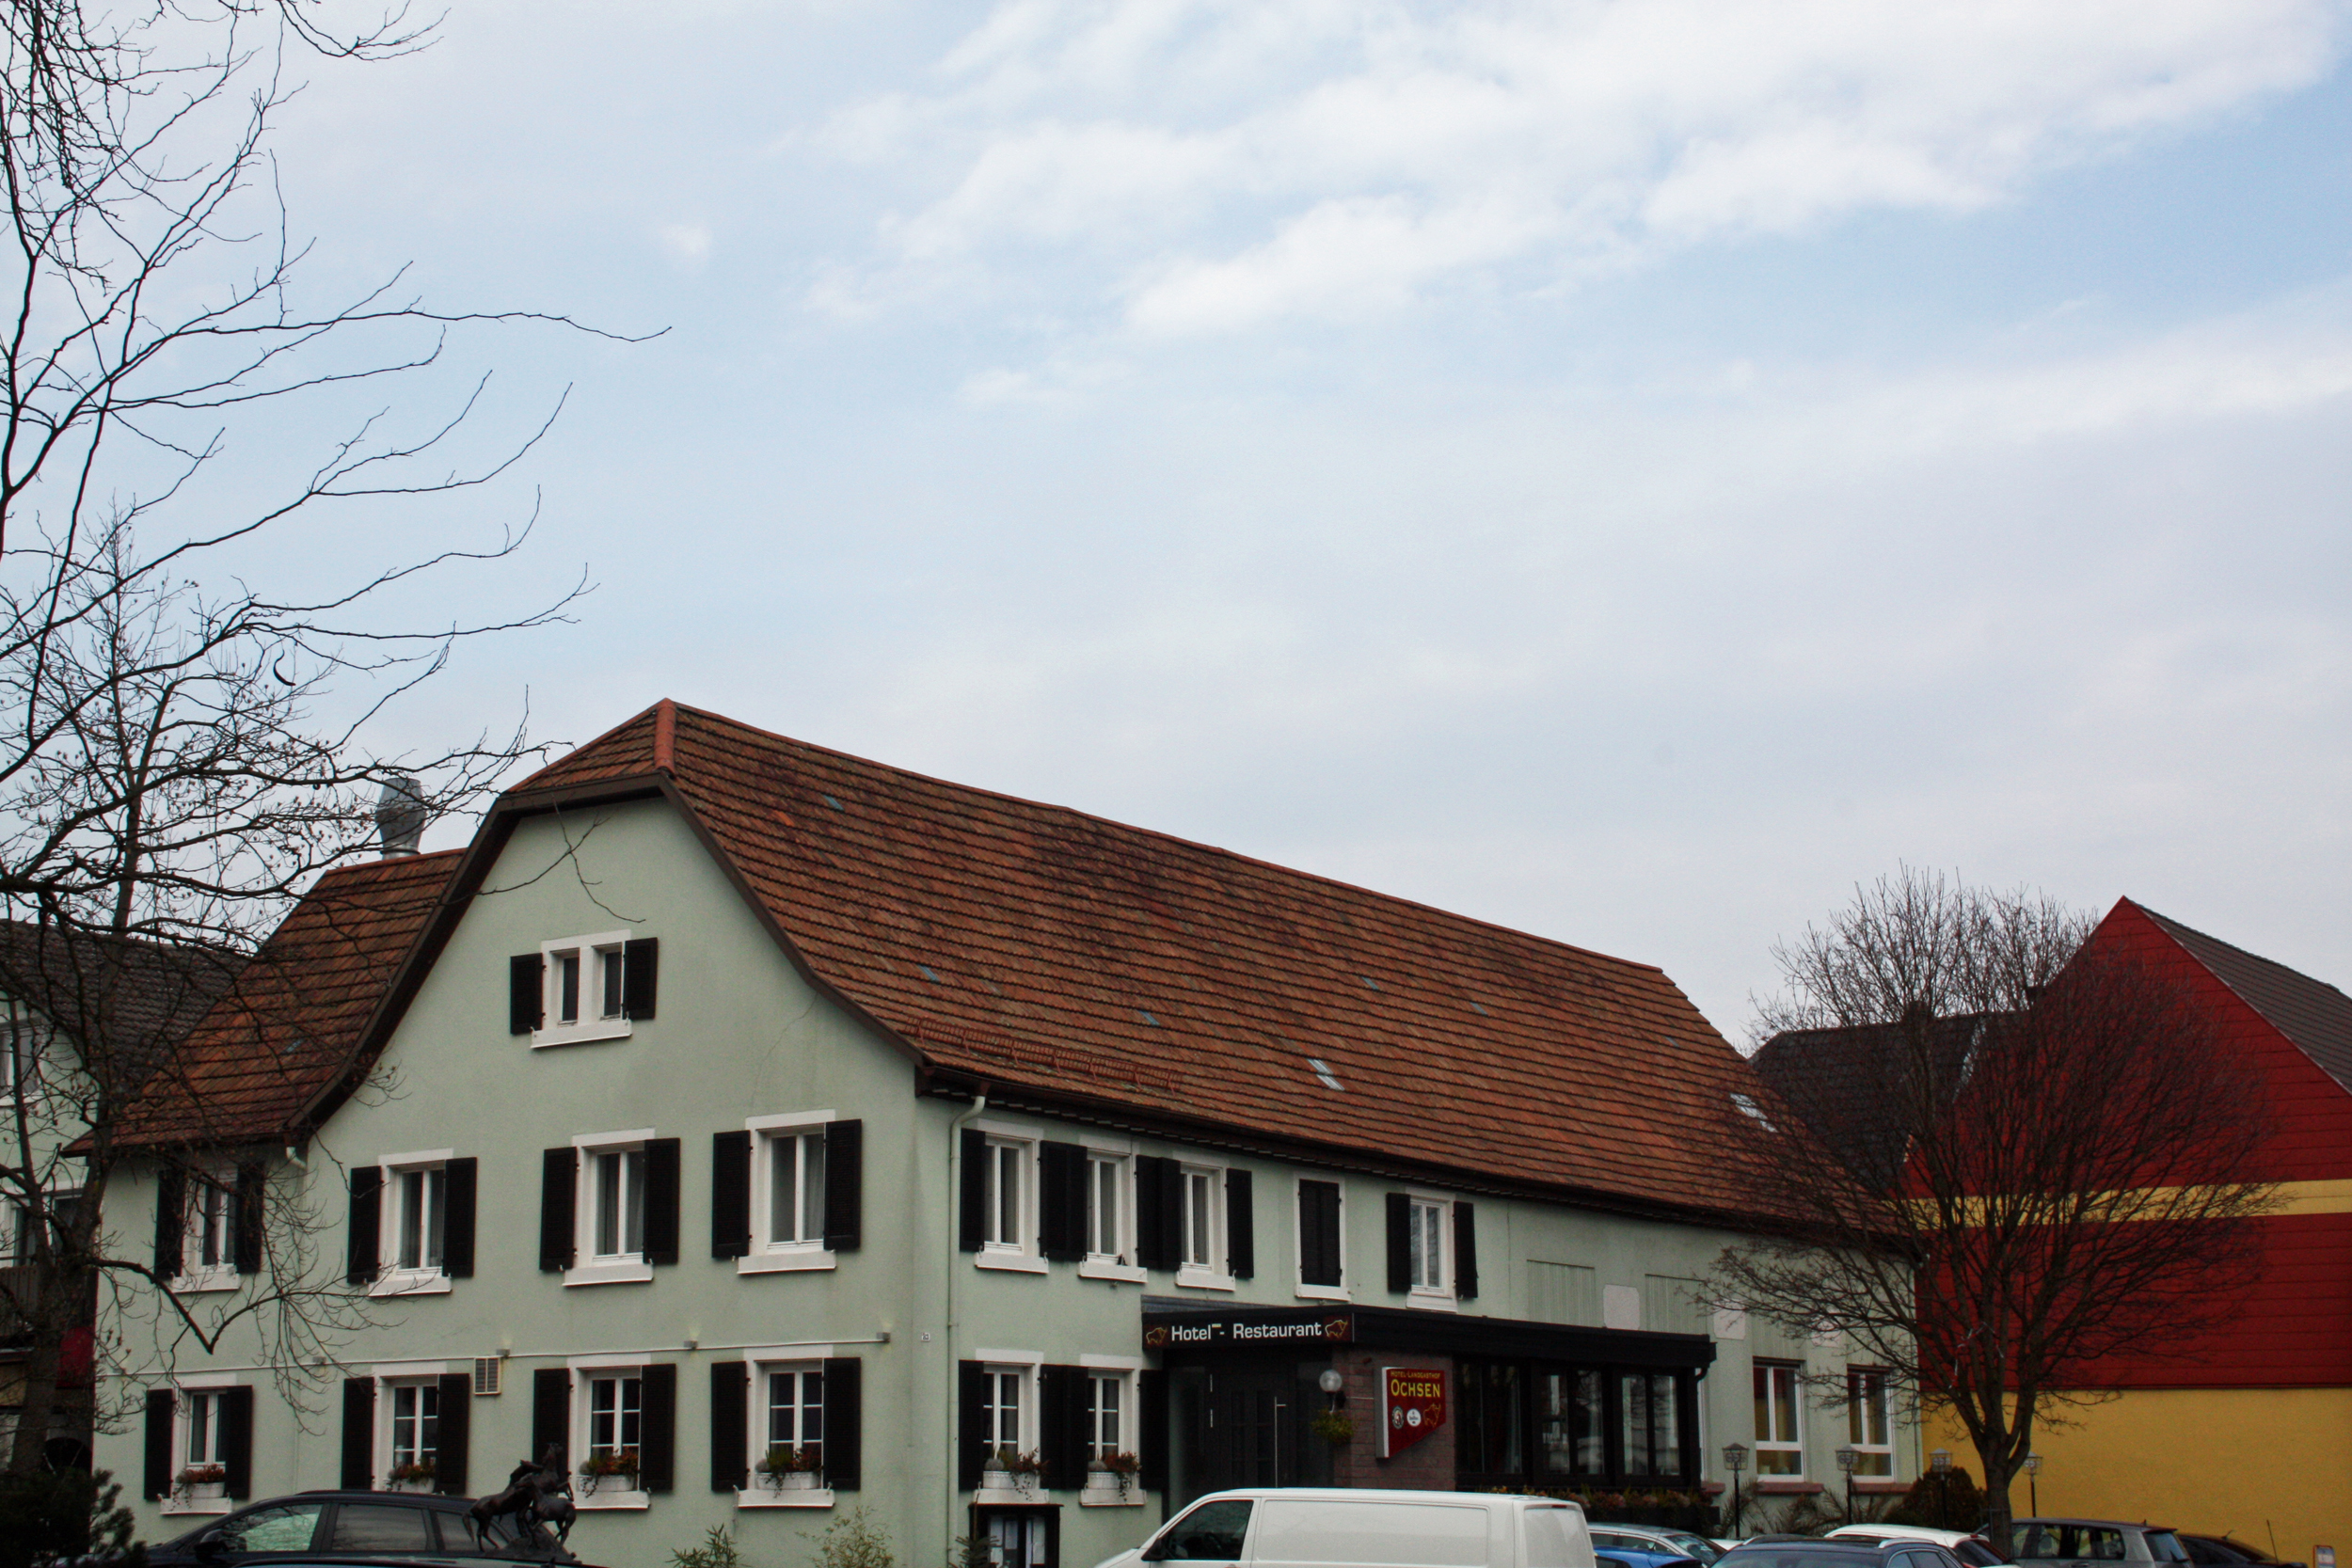 Hotel Landgasthof Ochsen, Sinzheim.
